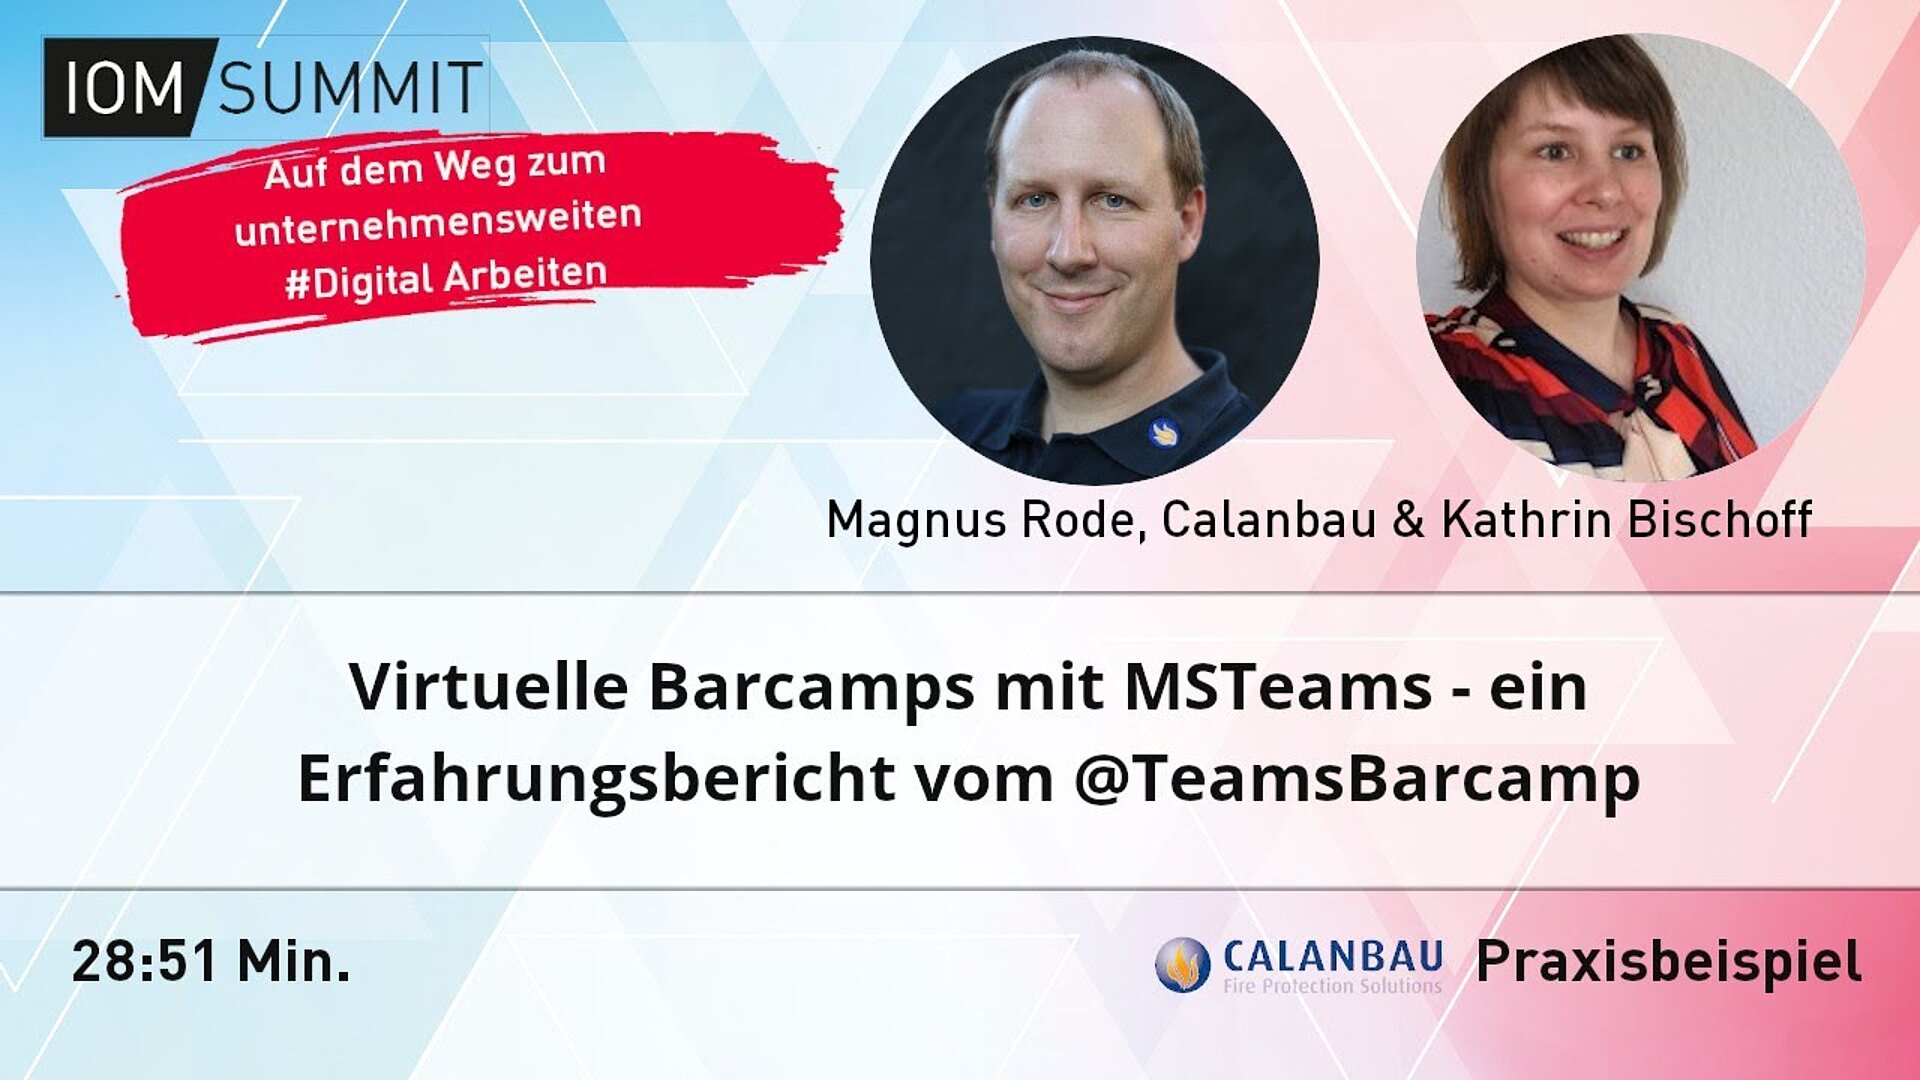 Praxisbeispiel: Virtuelle Barcamps mit MSTeams - ein Erfahrungsbericht vom @TeamsBarcamp